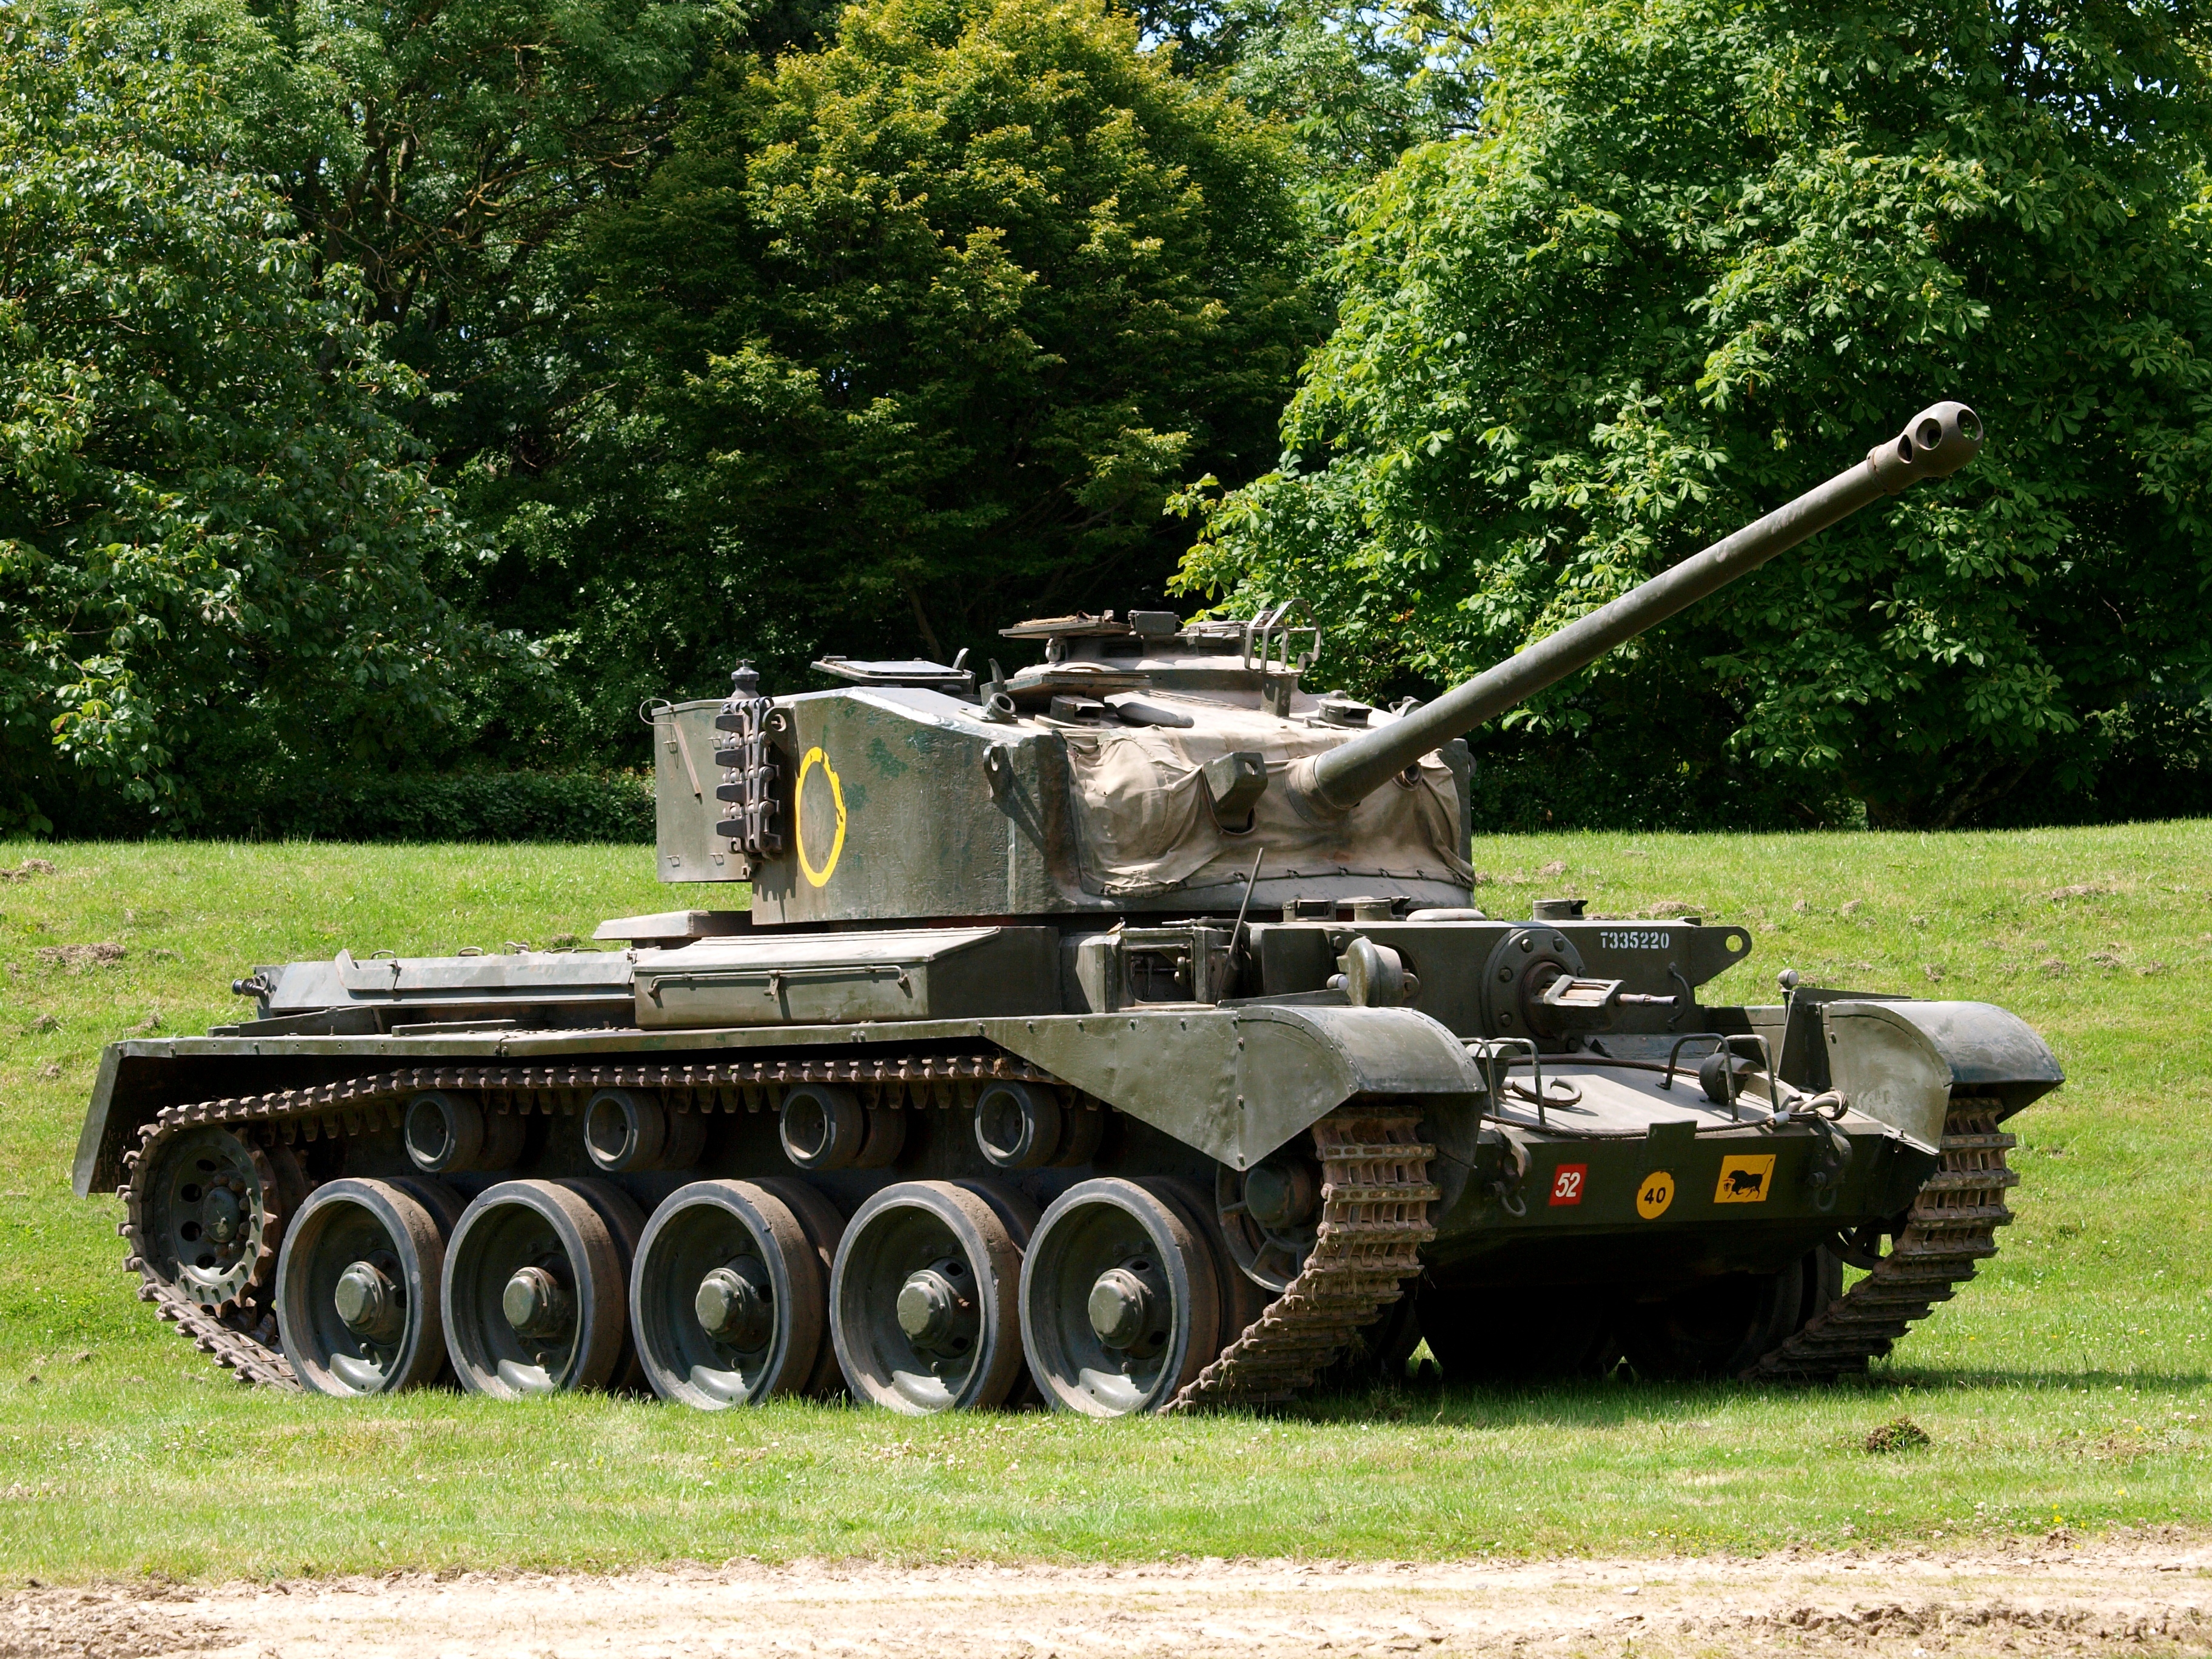 Самые красивые танки. A-34 Comet. Крейсерский танк a34 «Комета». Британский танк Comet. А-34 Комета танк.